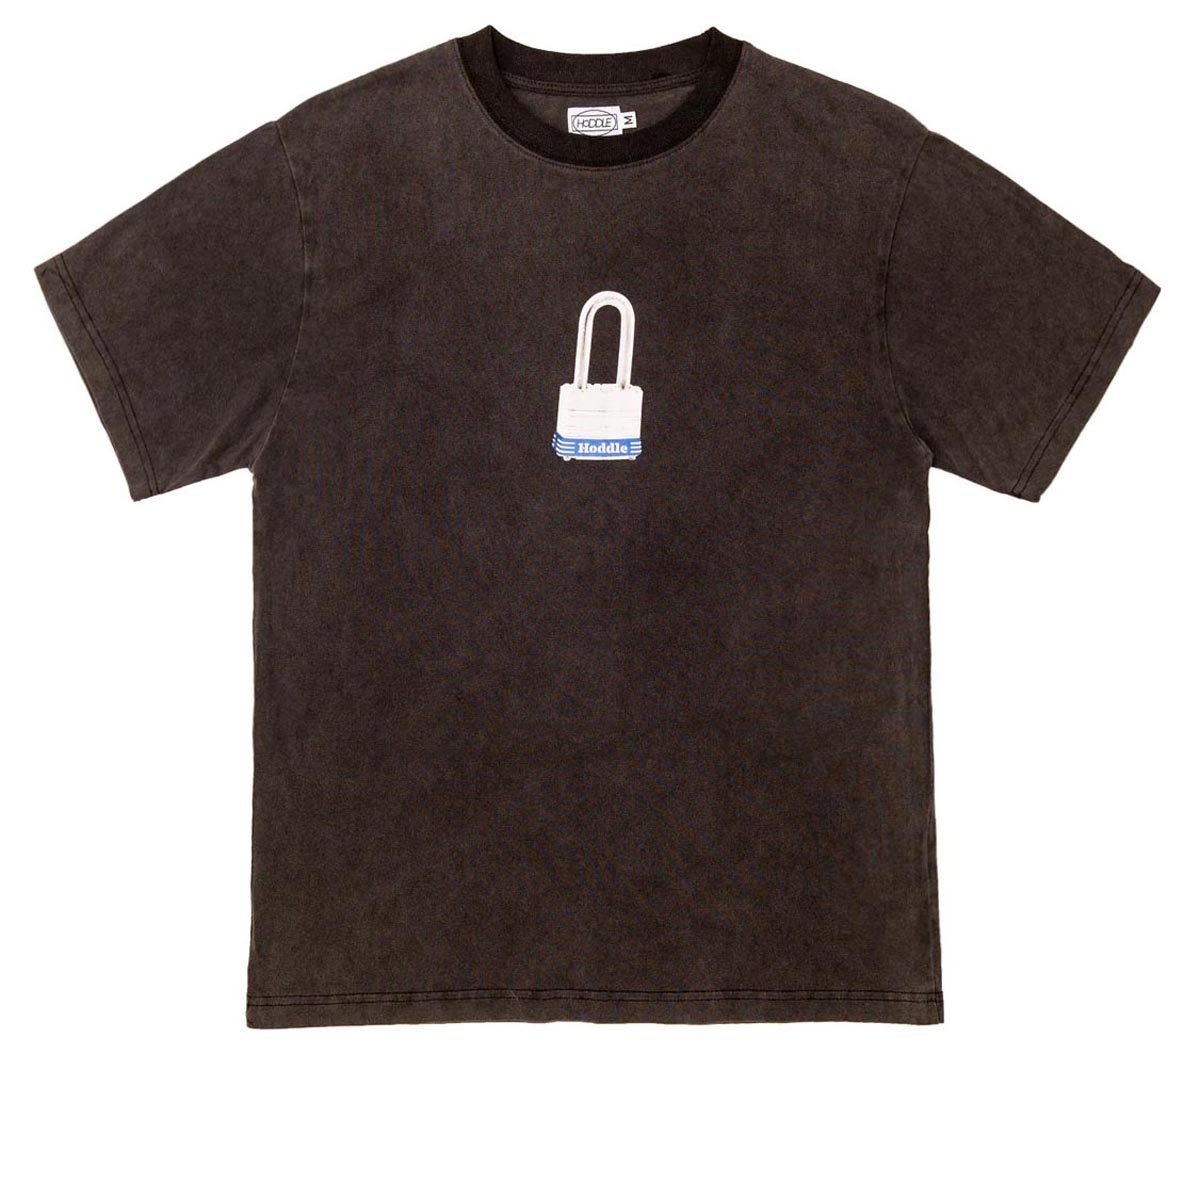 Hoddle Lock T-Shirt - Black Wash image 1